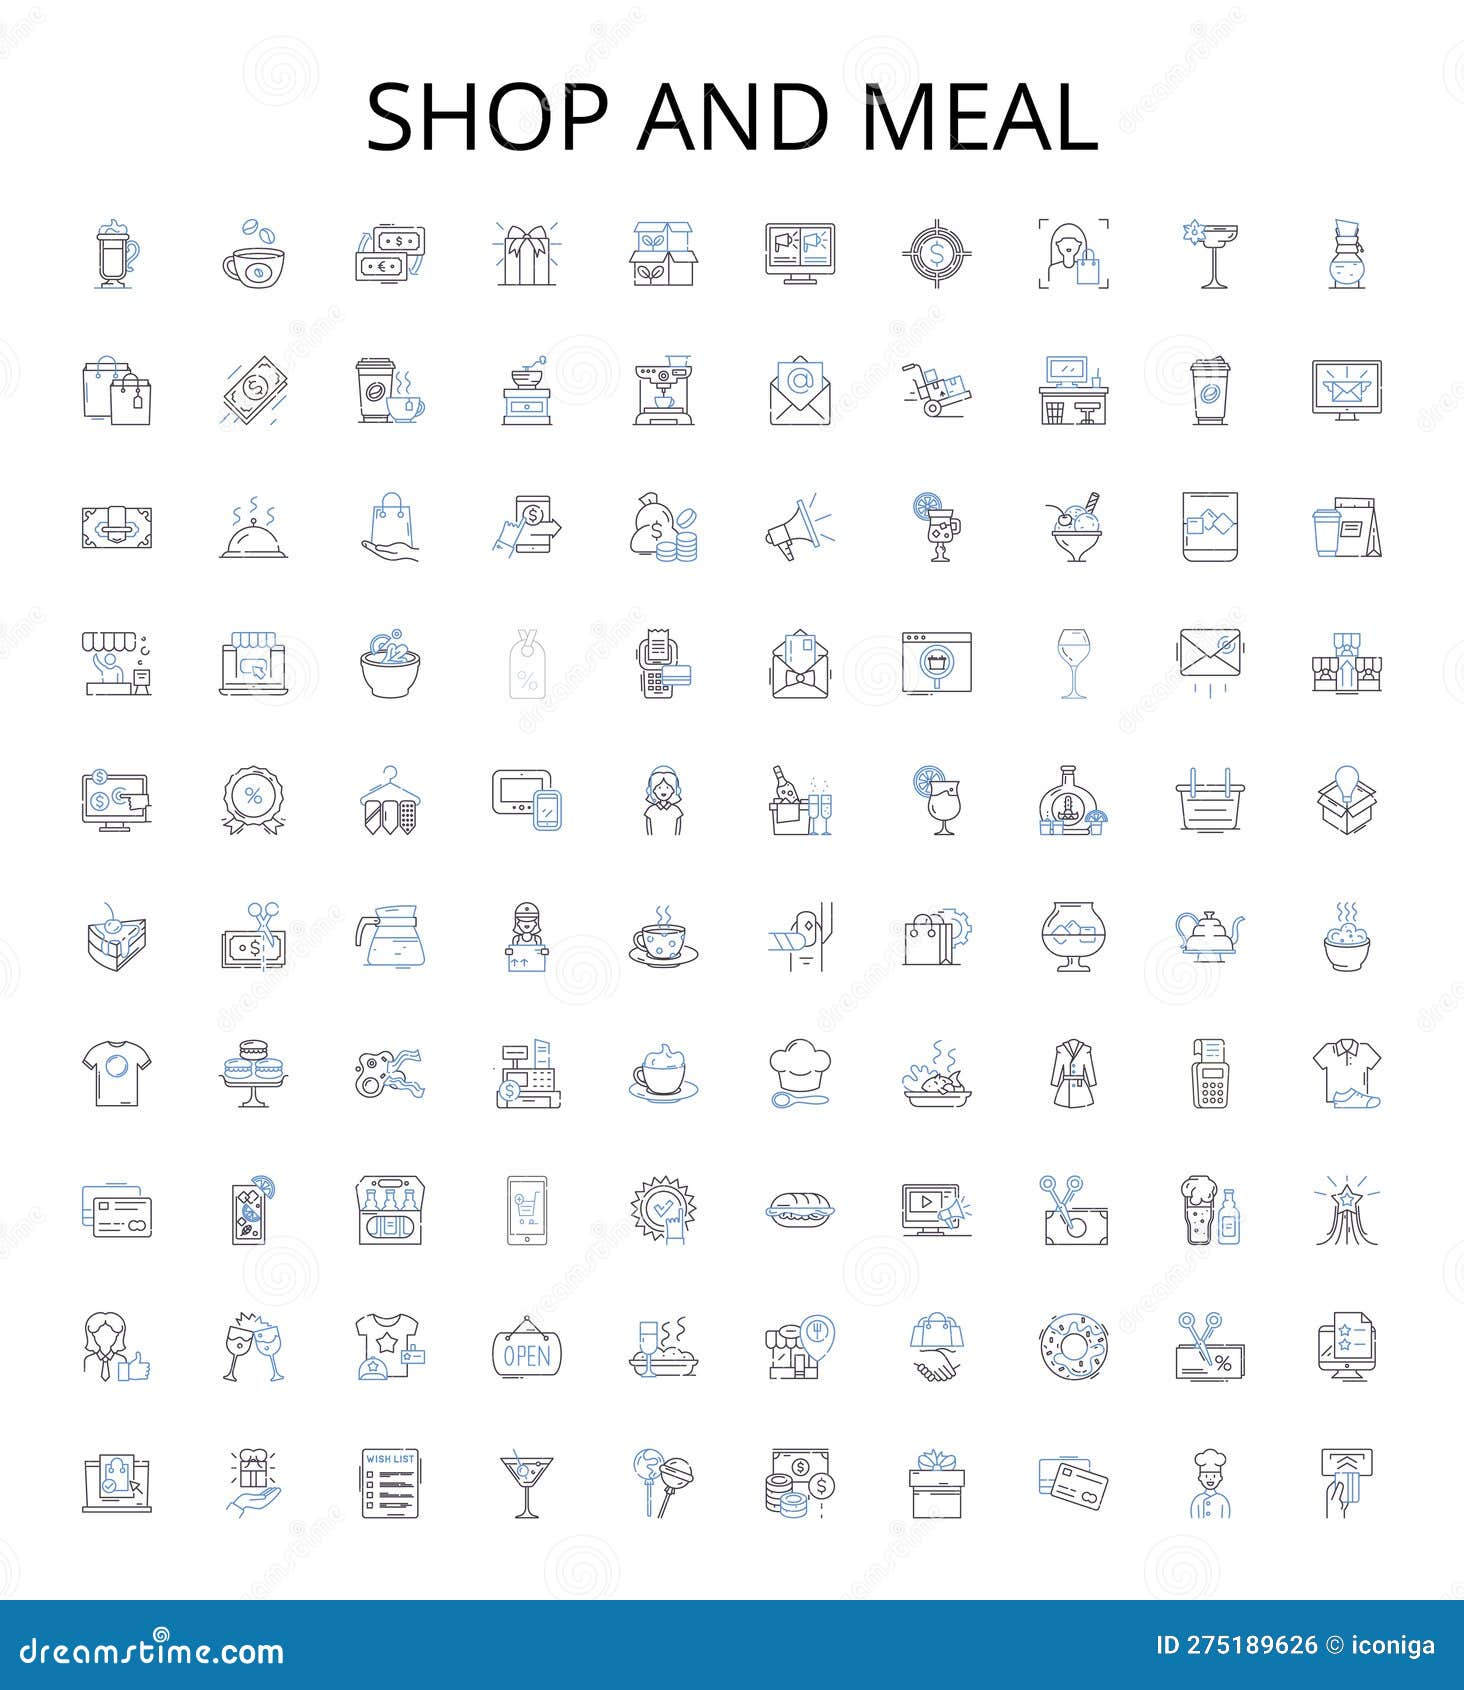 shop and meal outline icons collection. shop, meal, restaurant, bistro, cafe, diner, brasserie   set